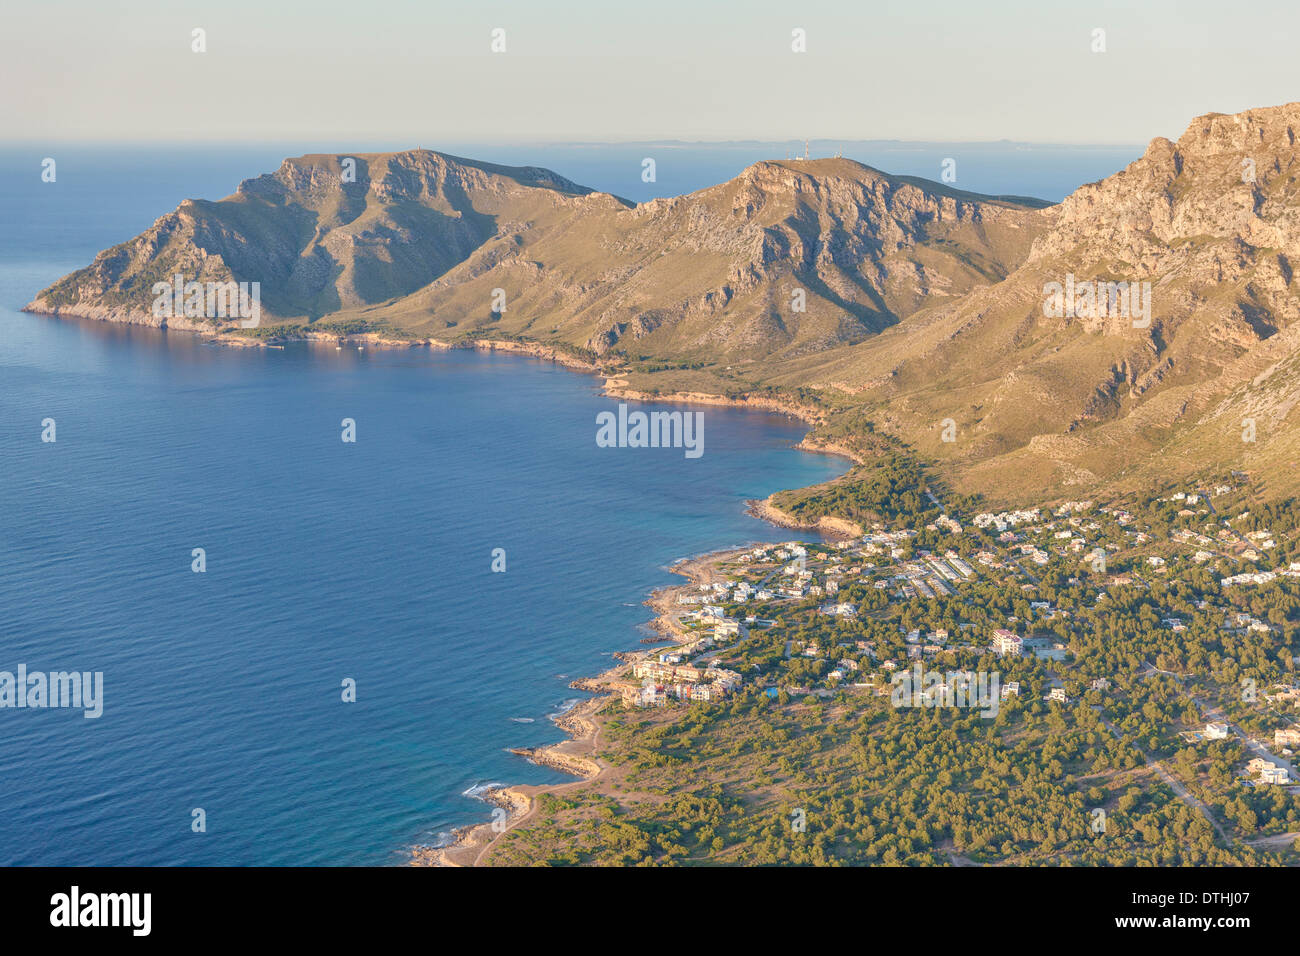 La côte nord-est de Majorque. Vue aérienne de Betlem resort area et Le Cap de Farrutx cape. Majorque, Baléares, Espagne Banque D'Images